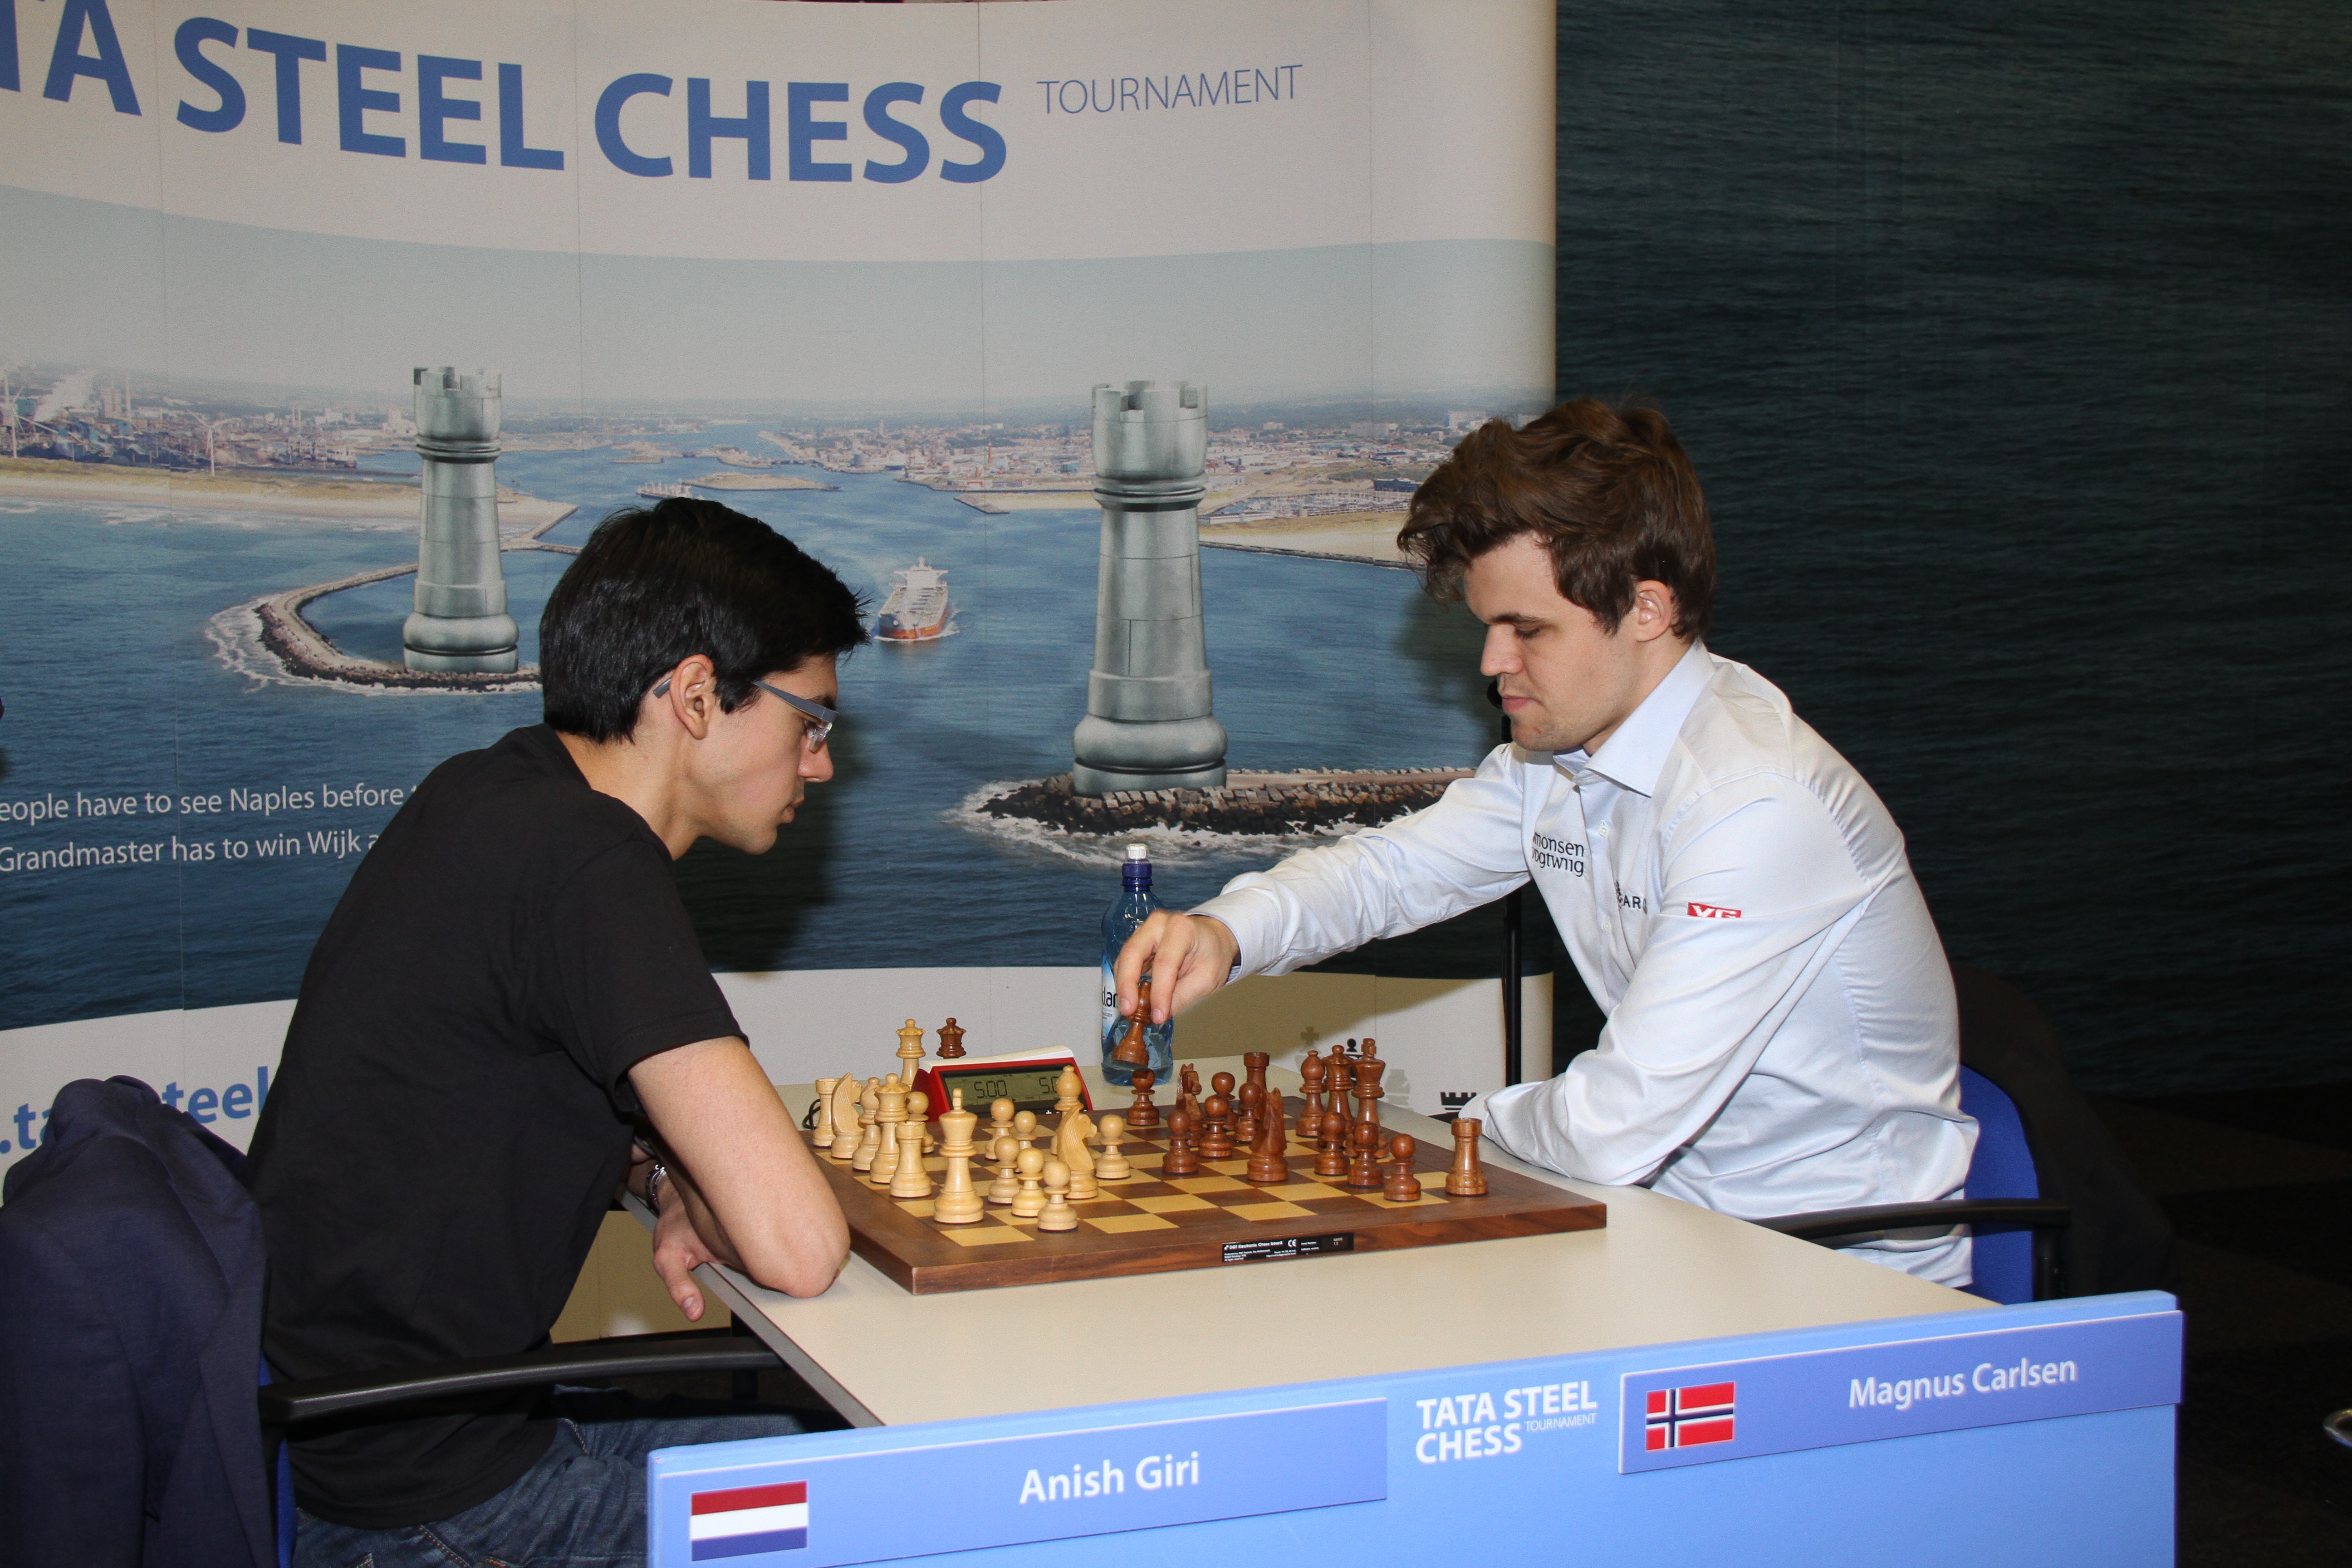 EXCITING STREET CHESS Magnus Carlsen vs Anish Giri 